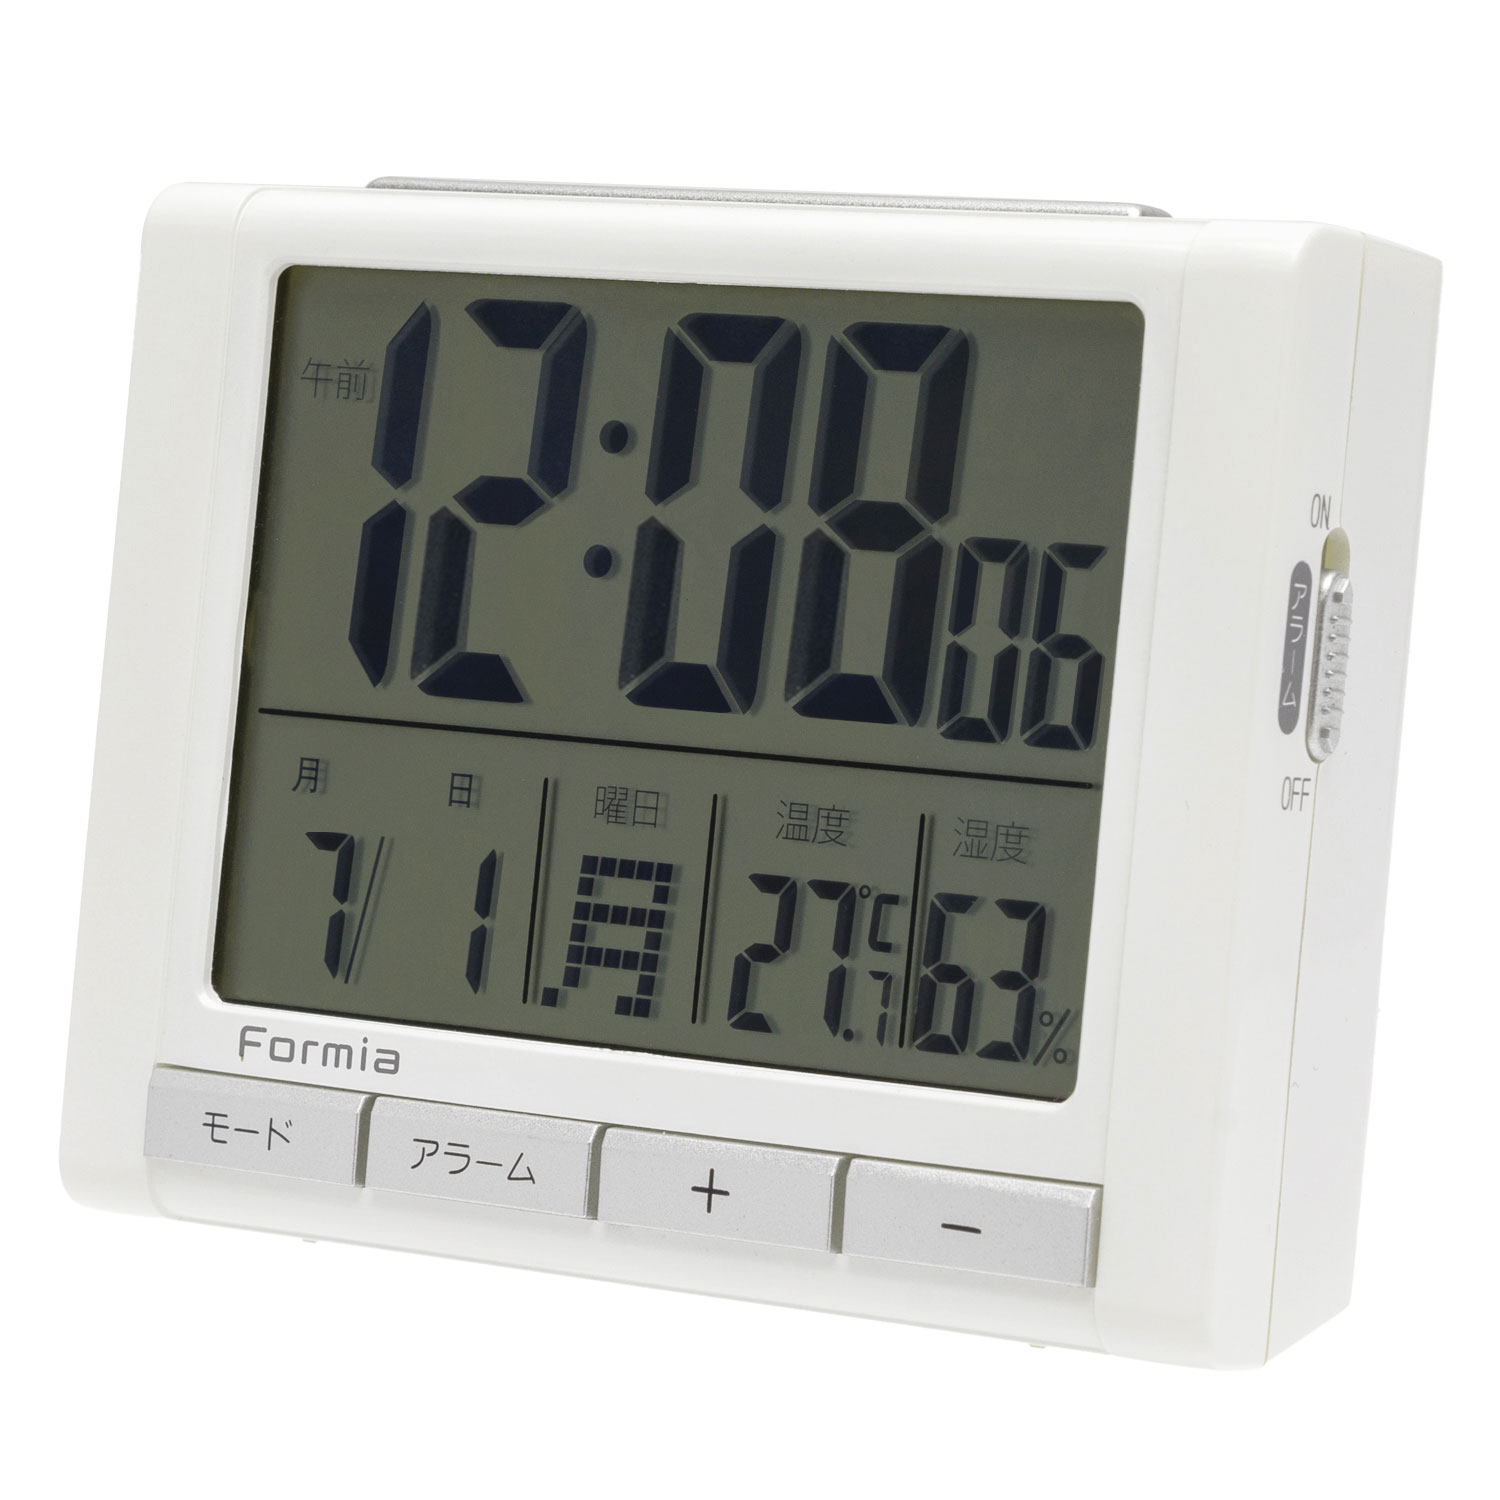 534円 高品質の人気 不二貿易 置時計デジタル テウス WH 99070